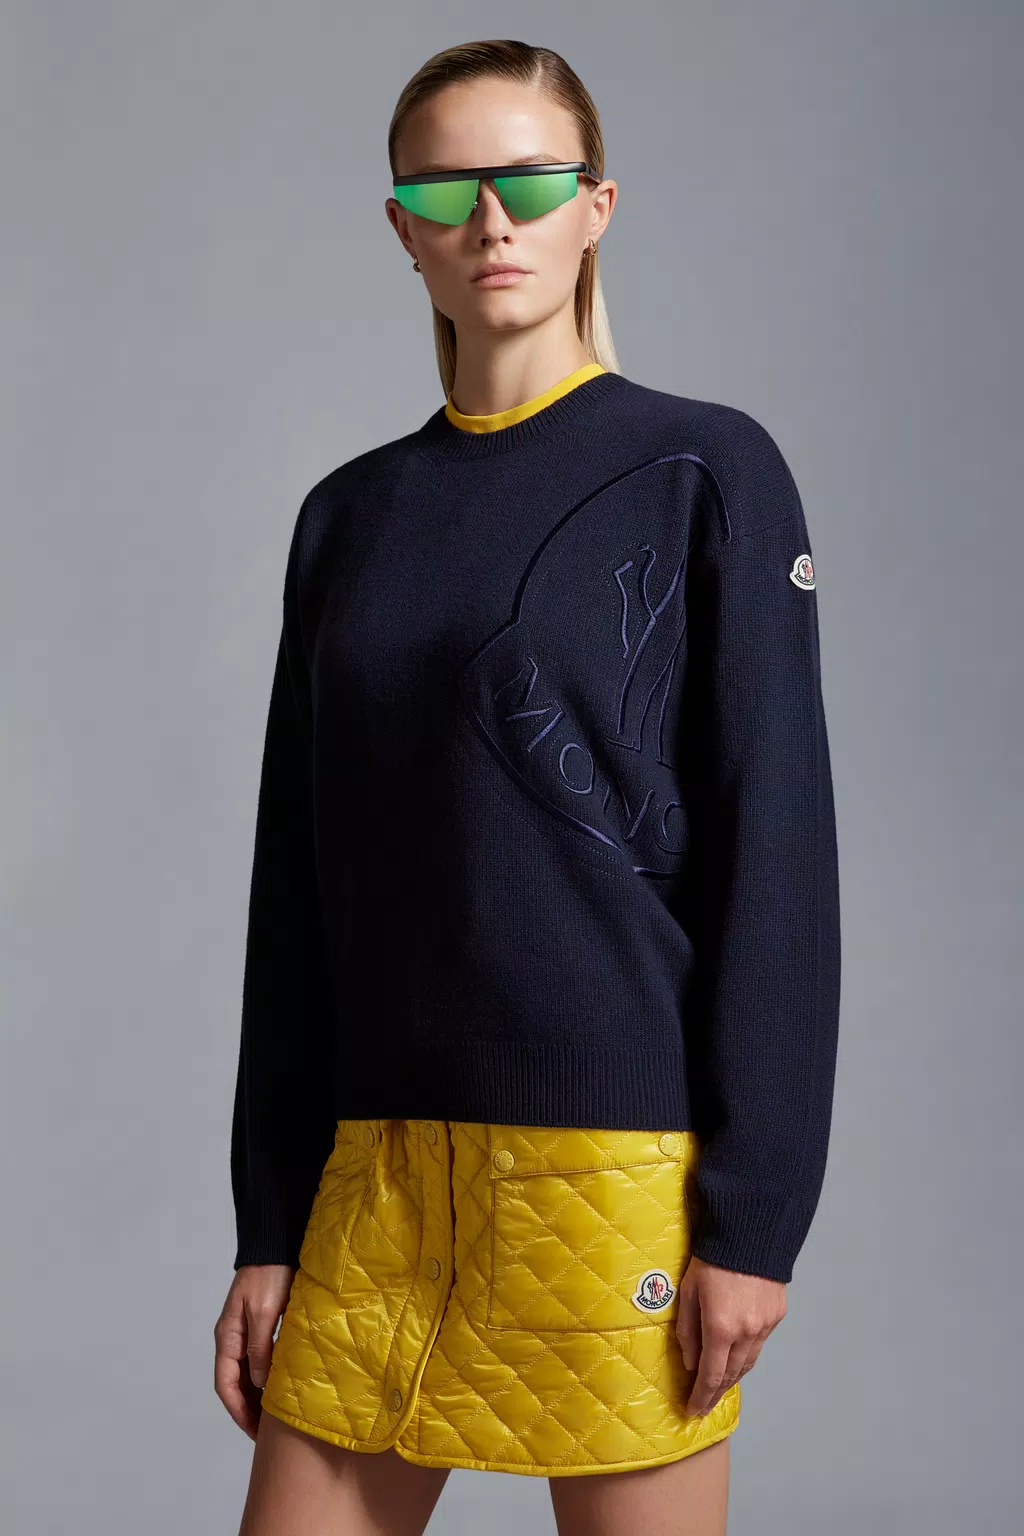 Louis Vuitton Wool Blend Crewneck WHITE/BLACK. Size M0